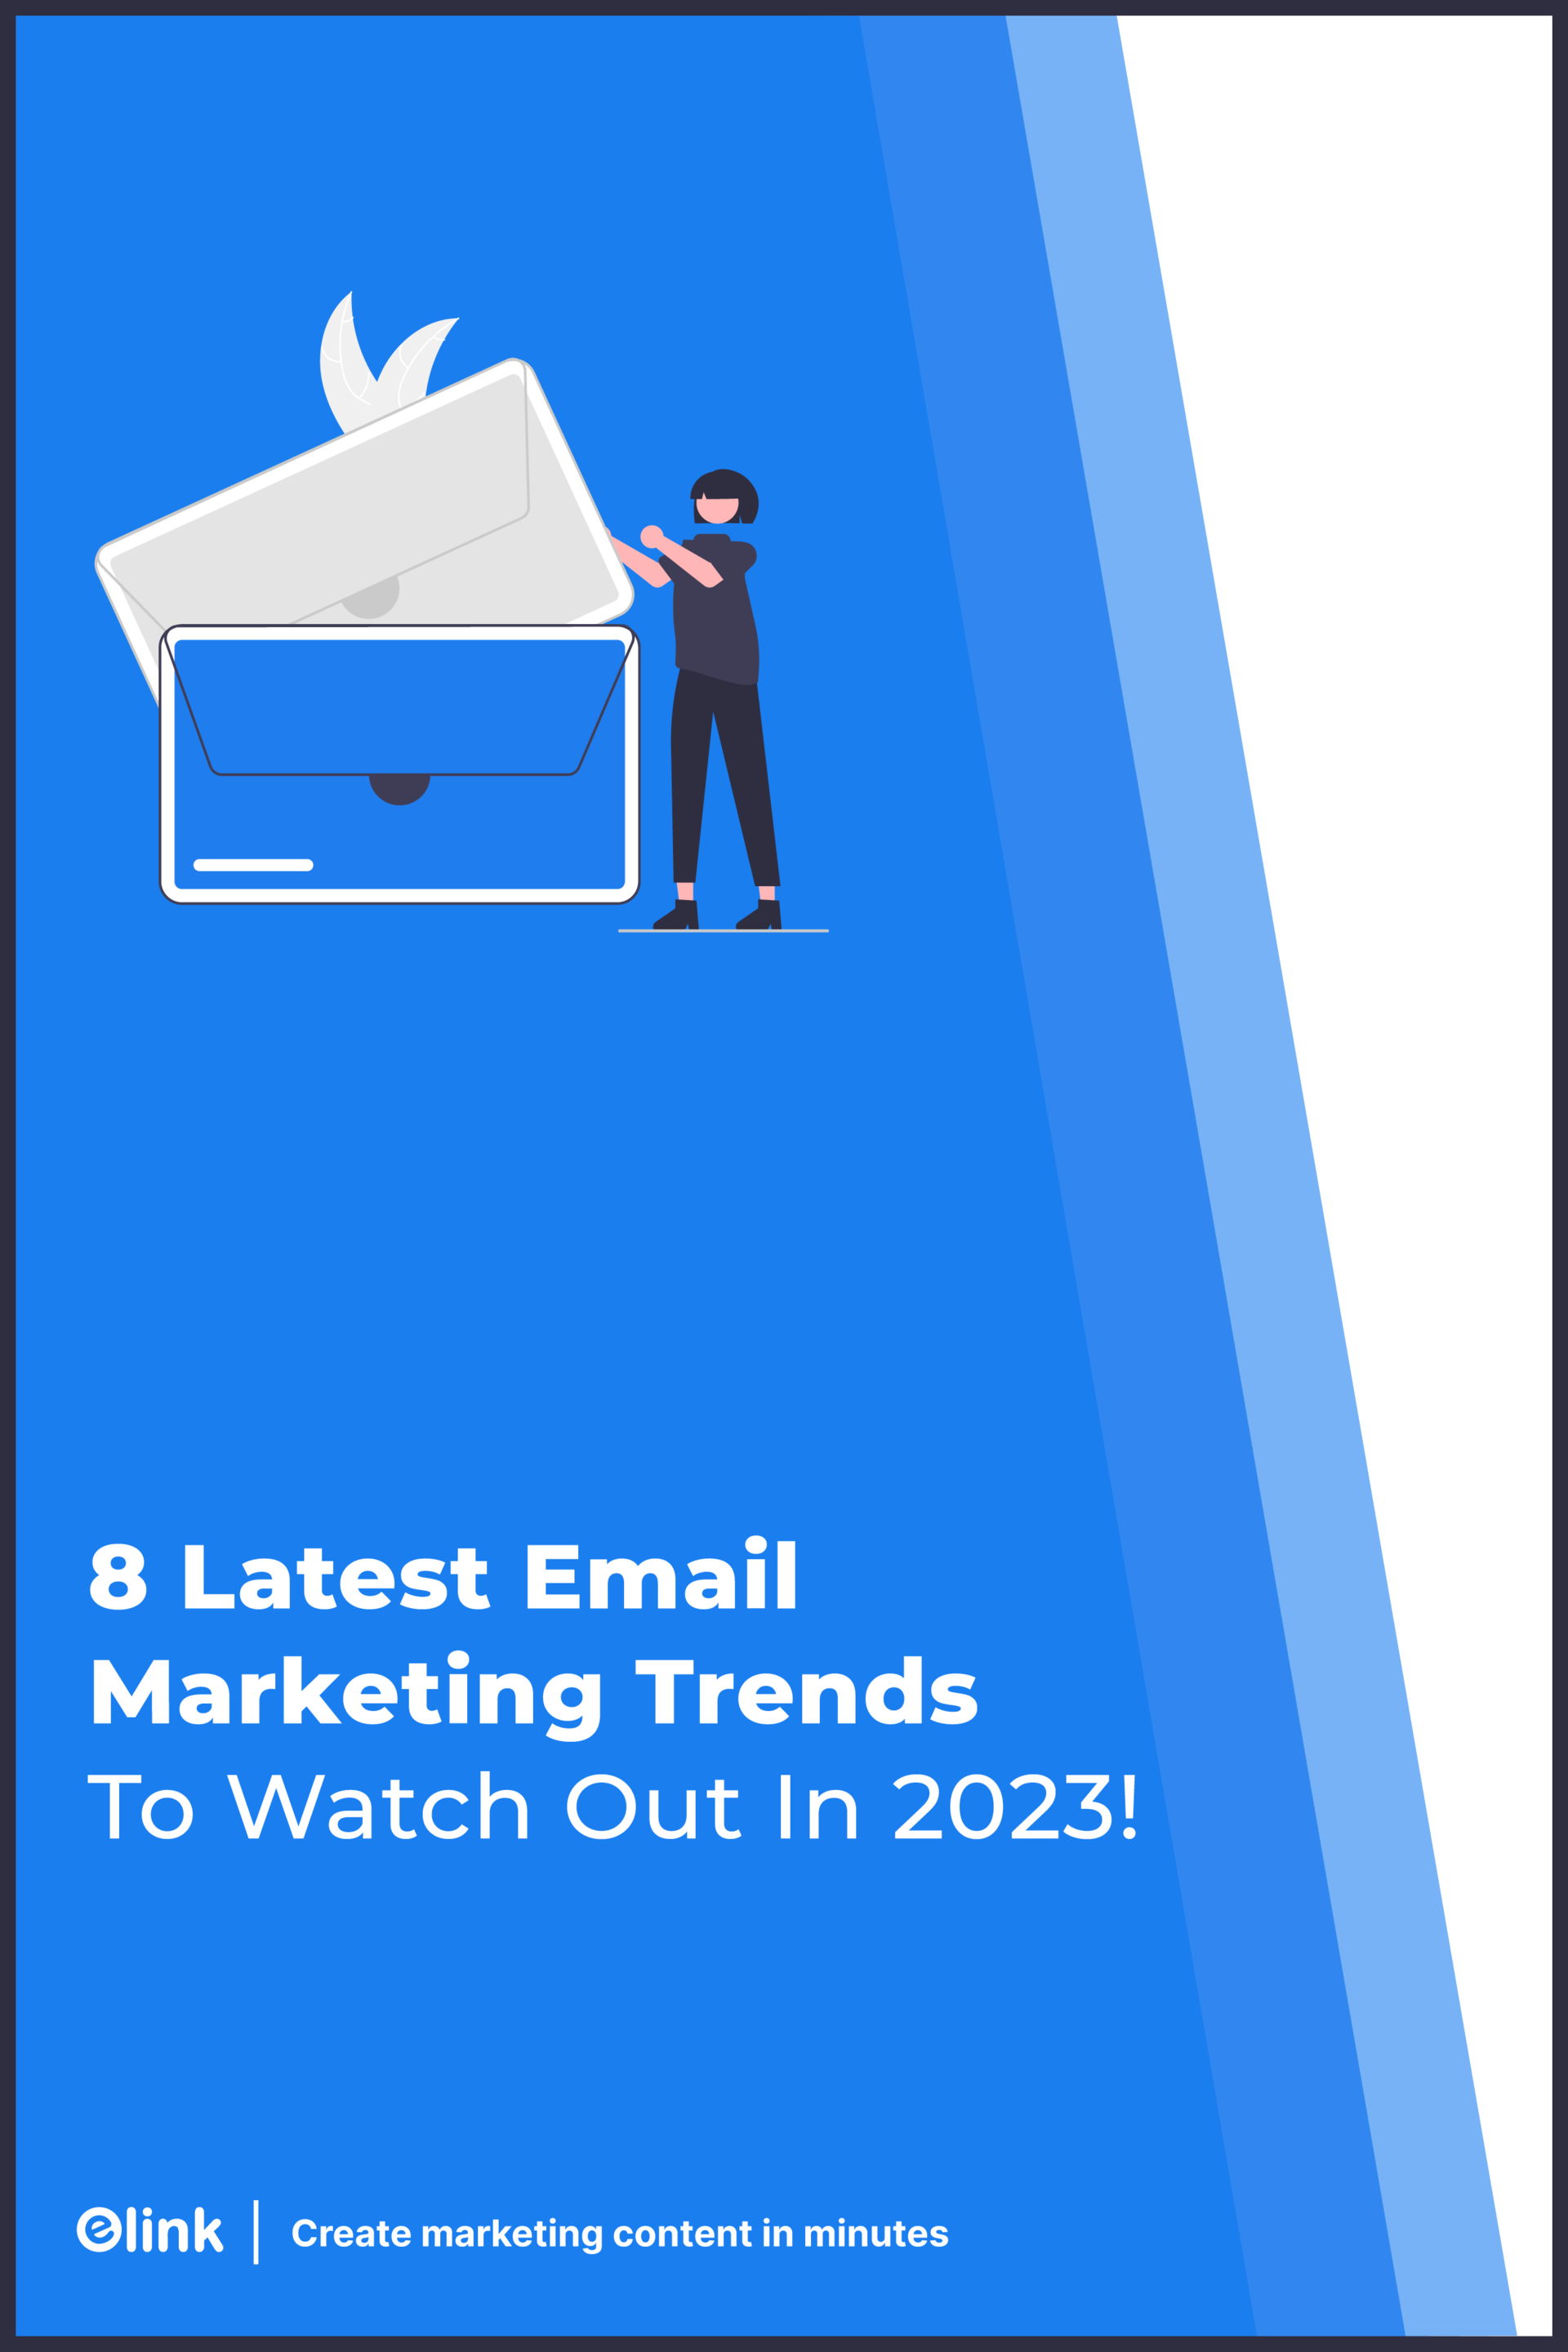 Banner de pinterest de tendencias de marketing por correo electrónico